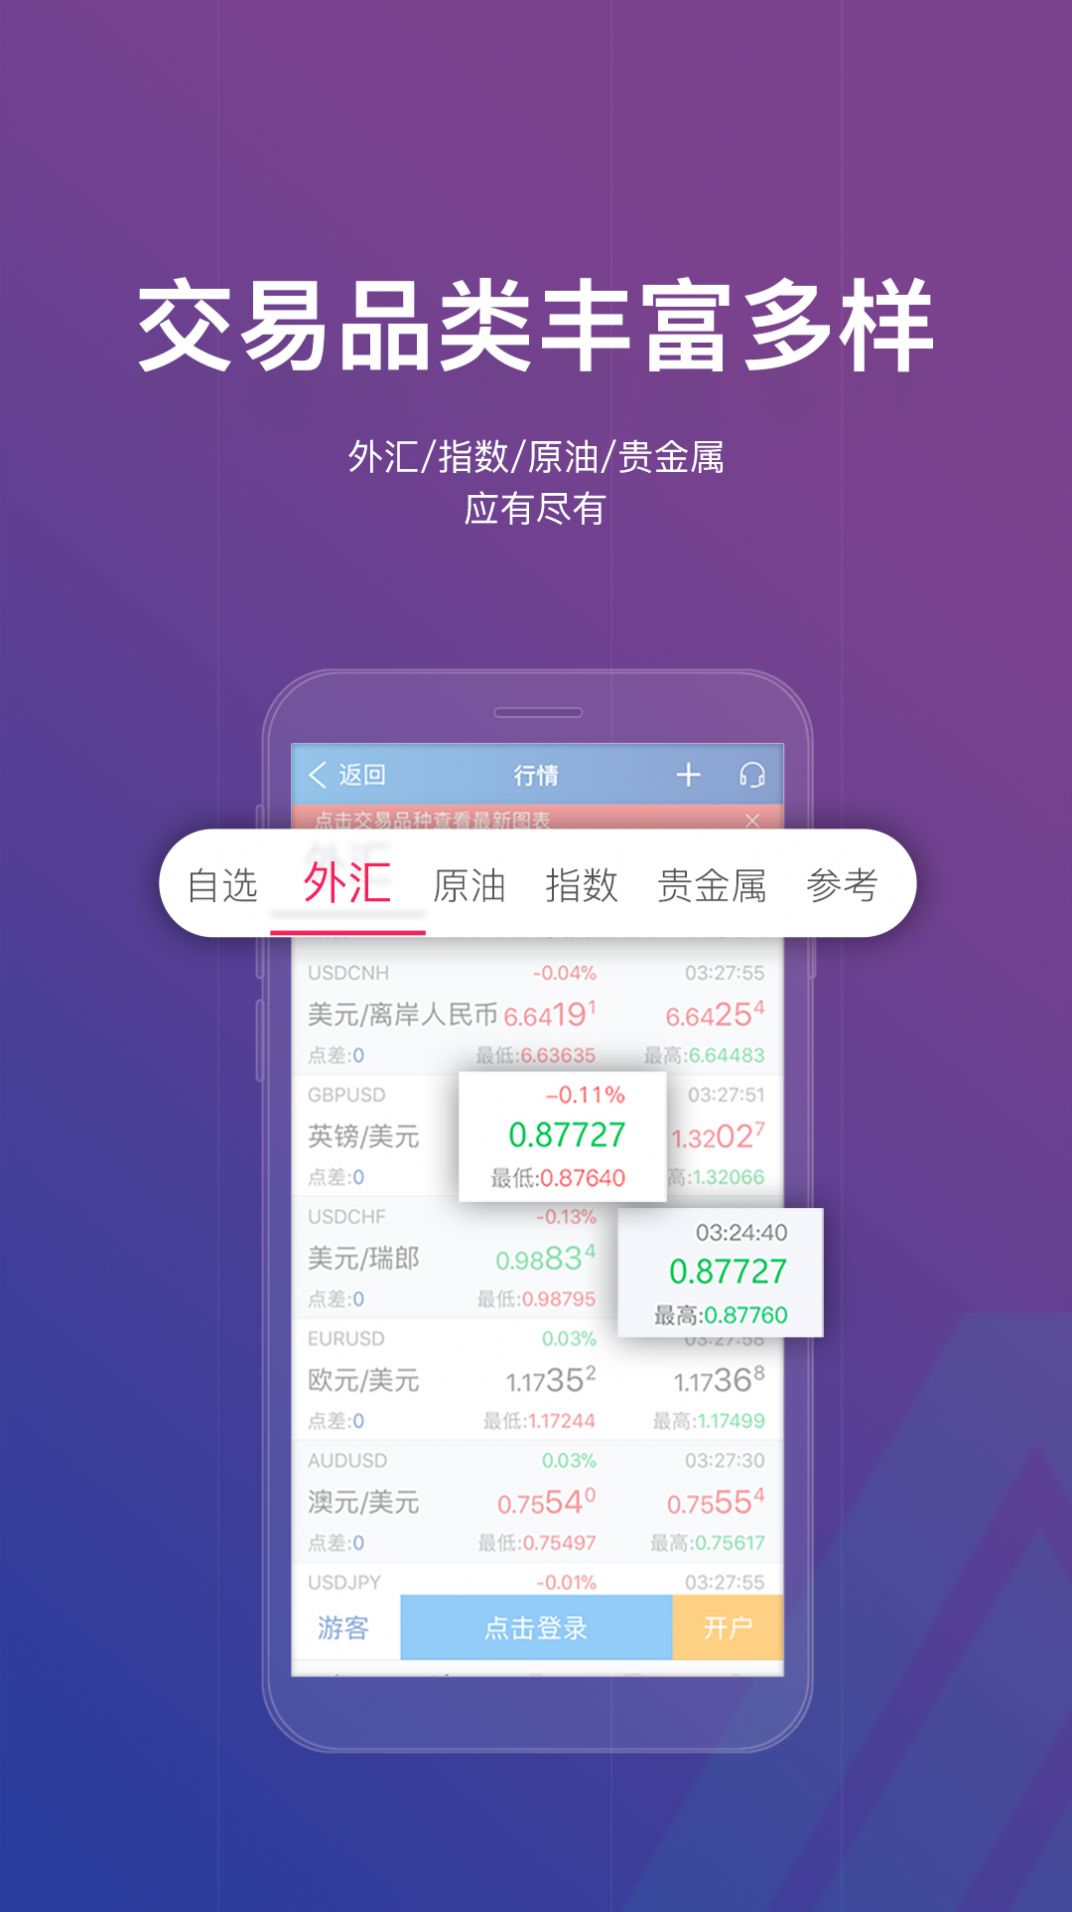 鑫圣投资官方app苹果版下载图片2